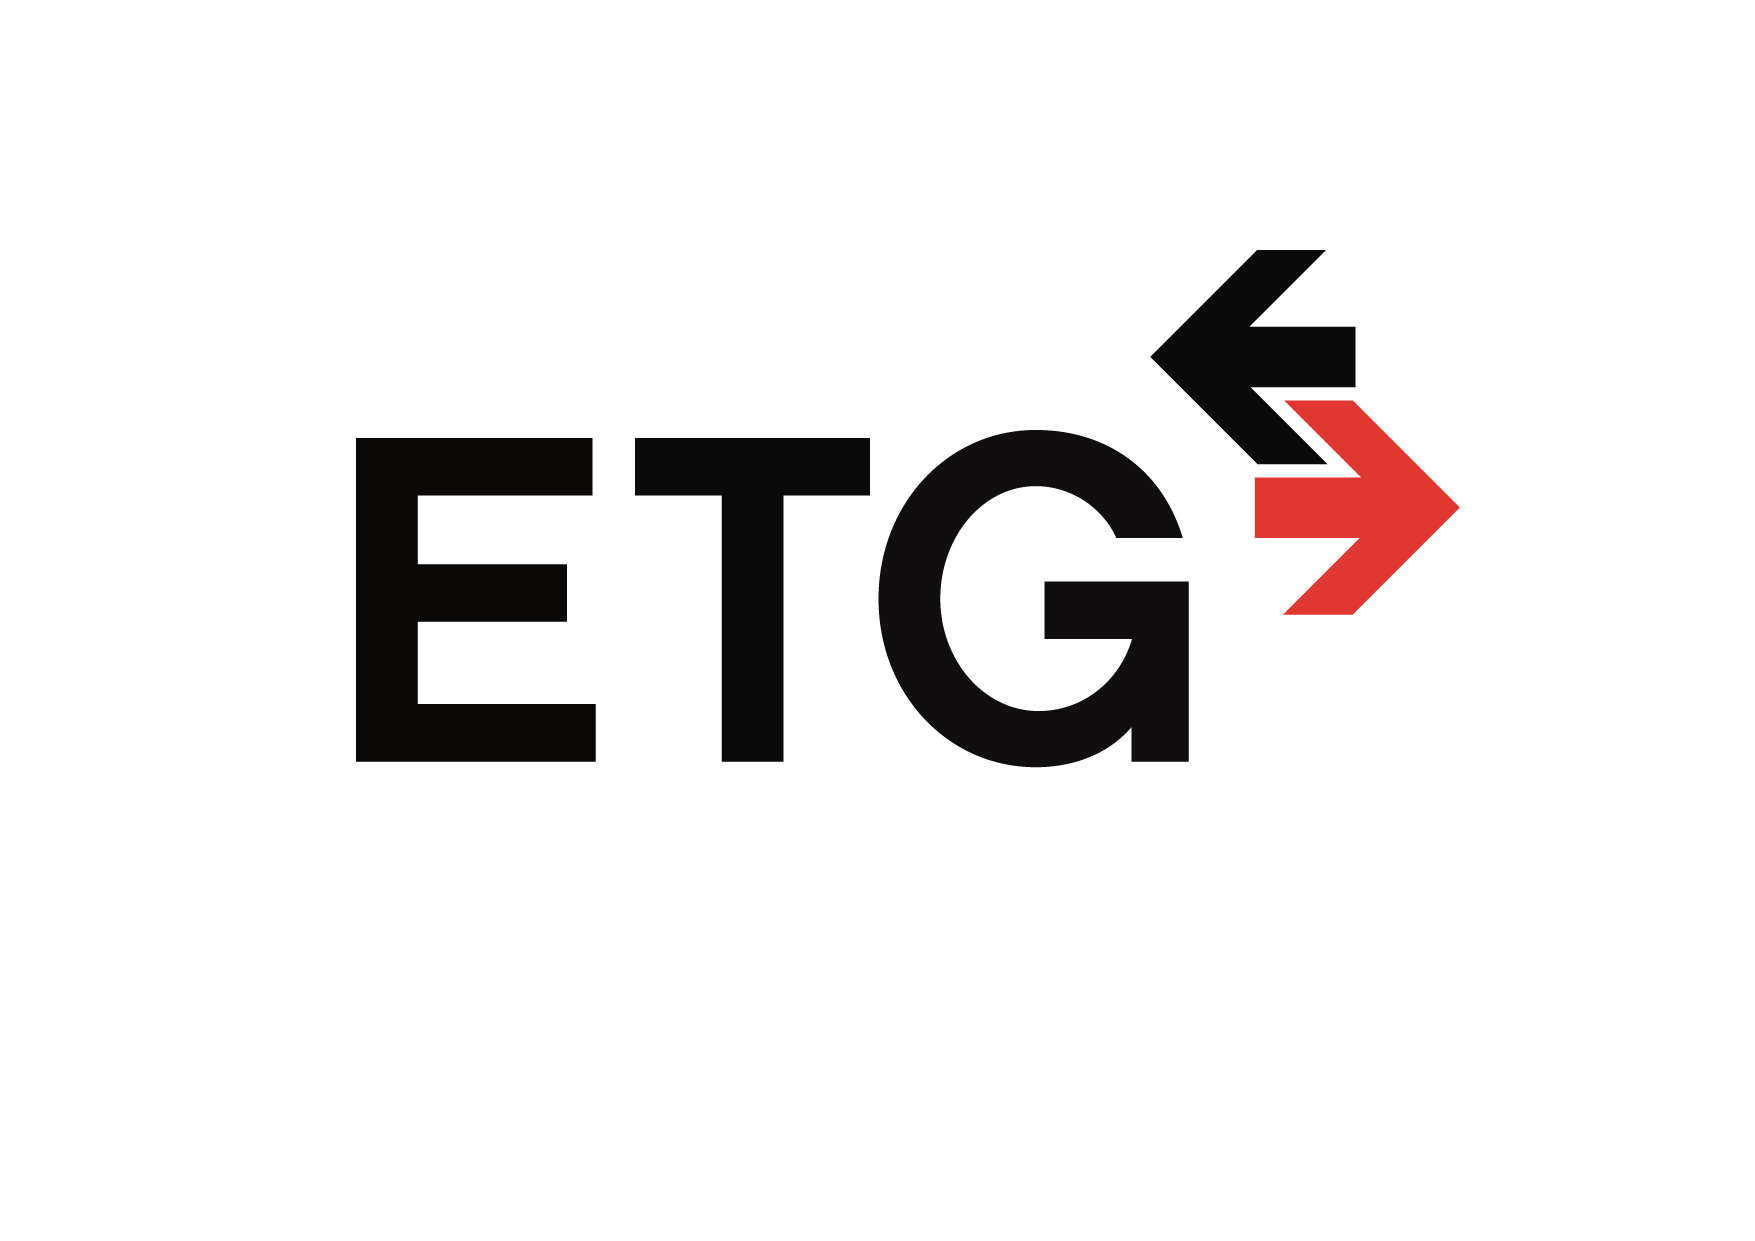 ETG logo